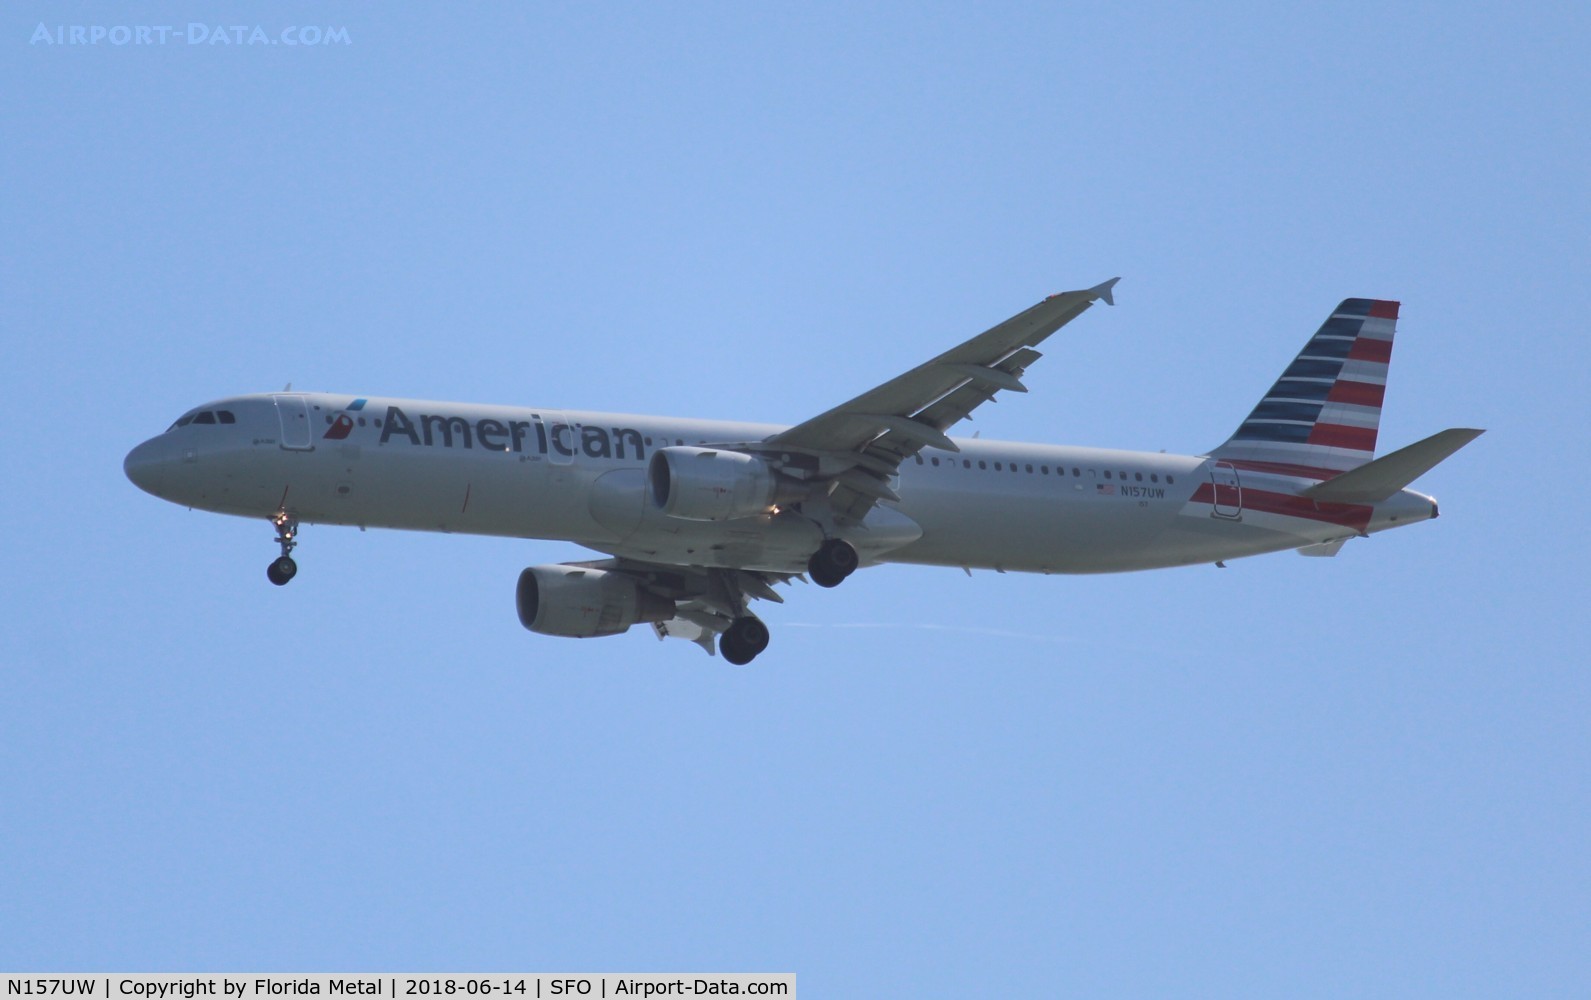 N157UW, 2013 Airbus A321-211 C/N 5696, American